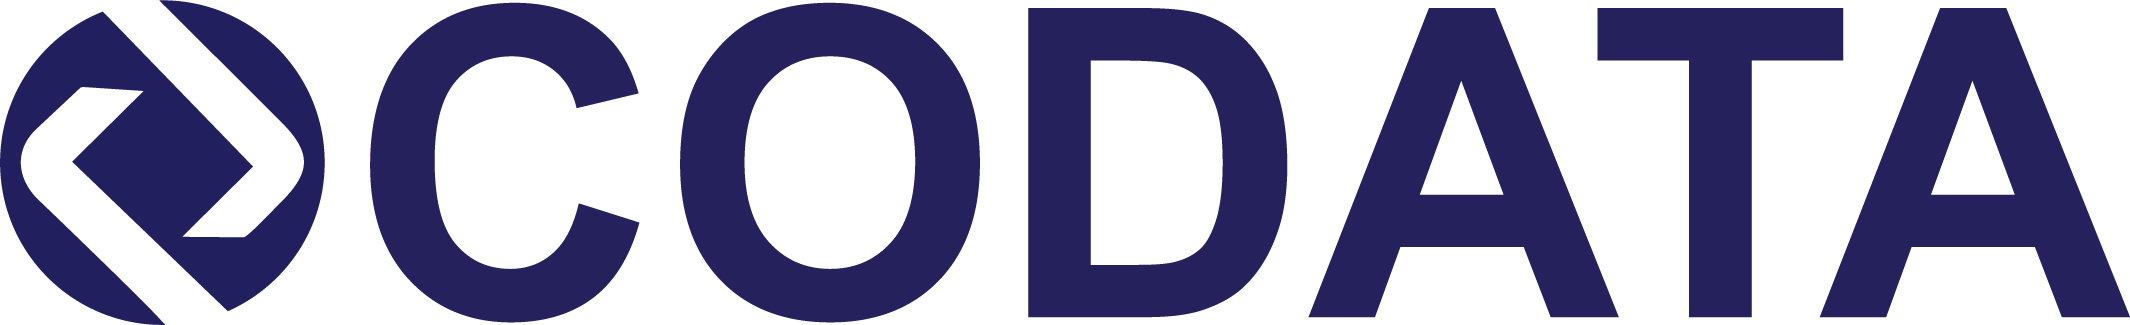 Logomarca até 2019 CODATA